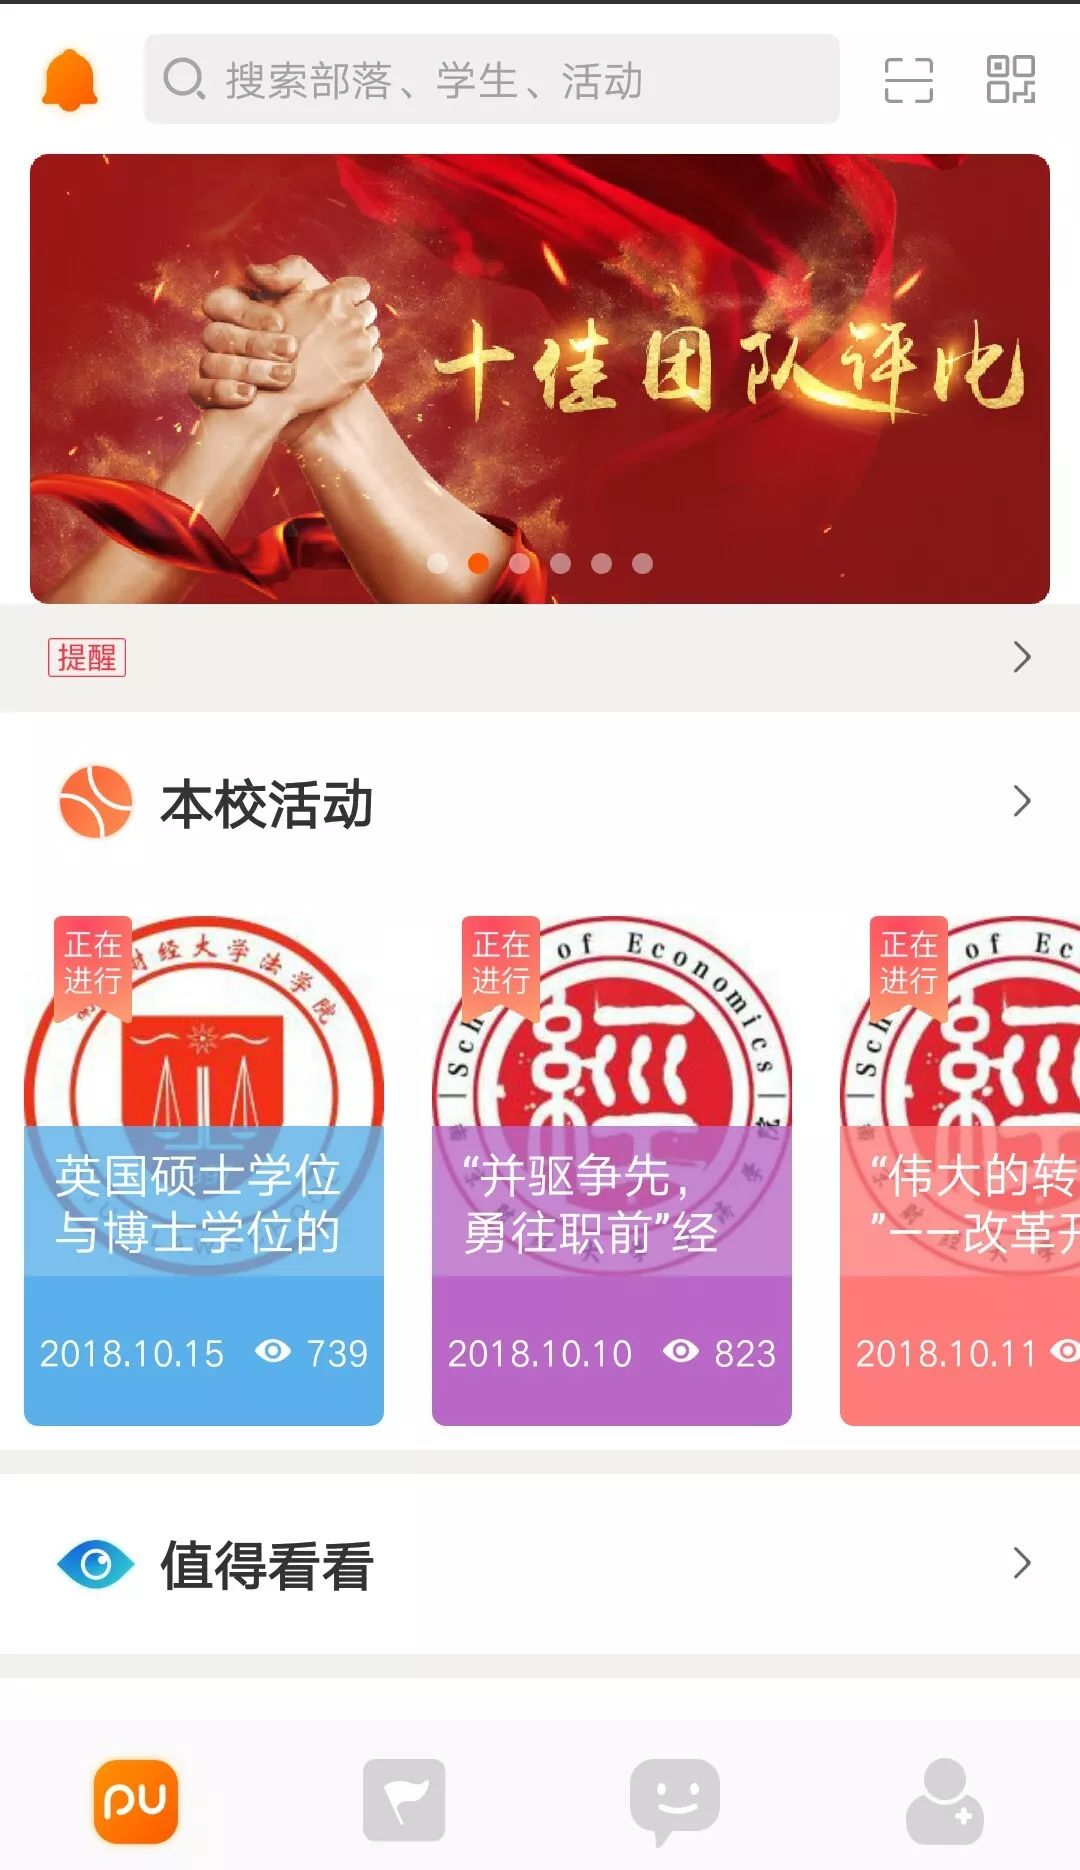 2018年江苏省大学生三下乡暑期社会实践十佳团队,十佳使者投票通道